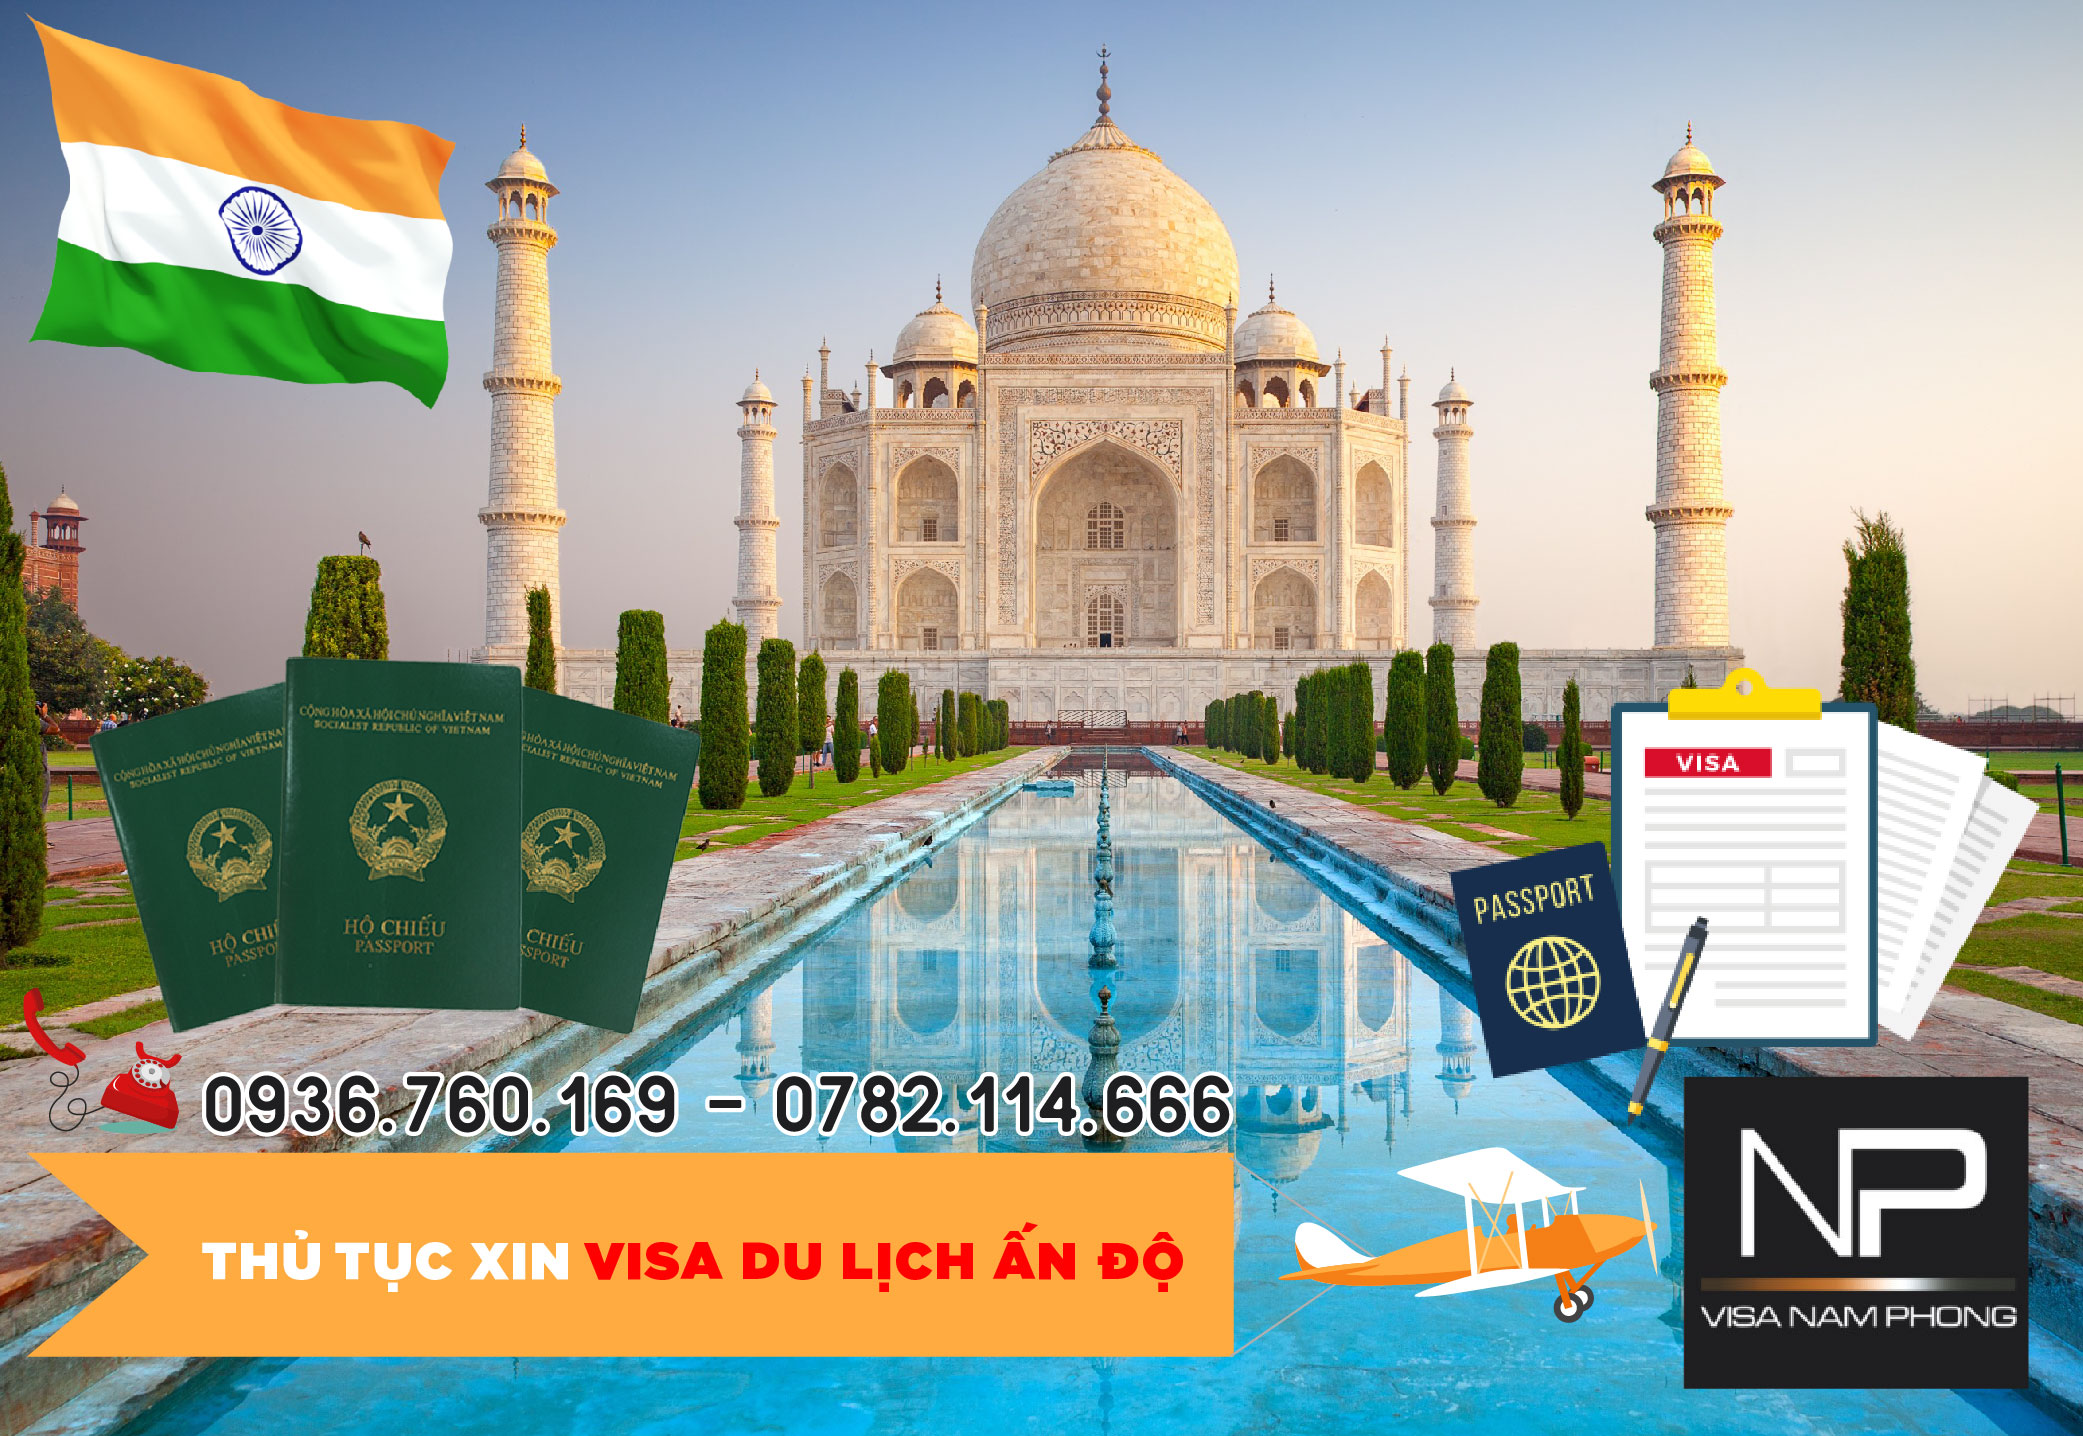 Thủ tục xin visa du lịch Ấn độ tại Hải Phòng